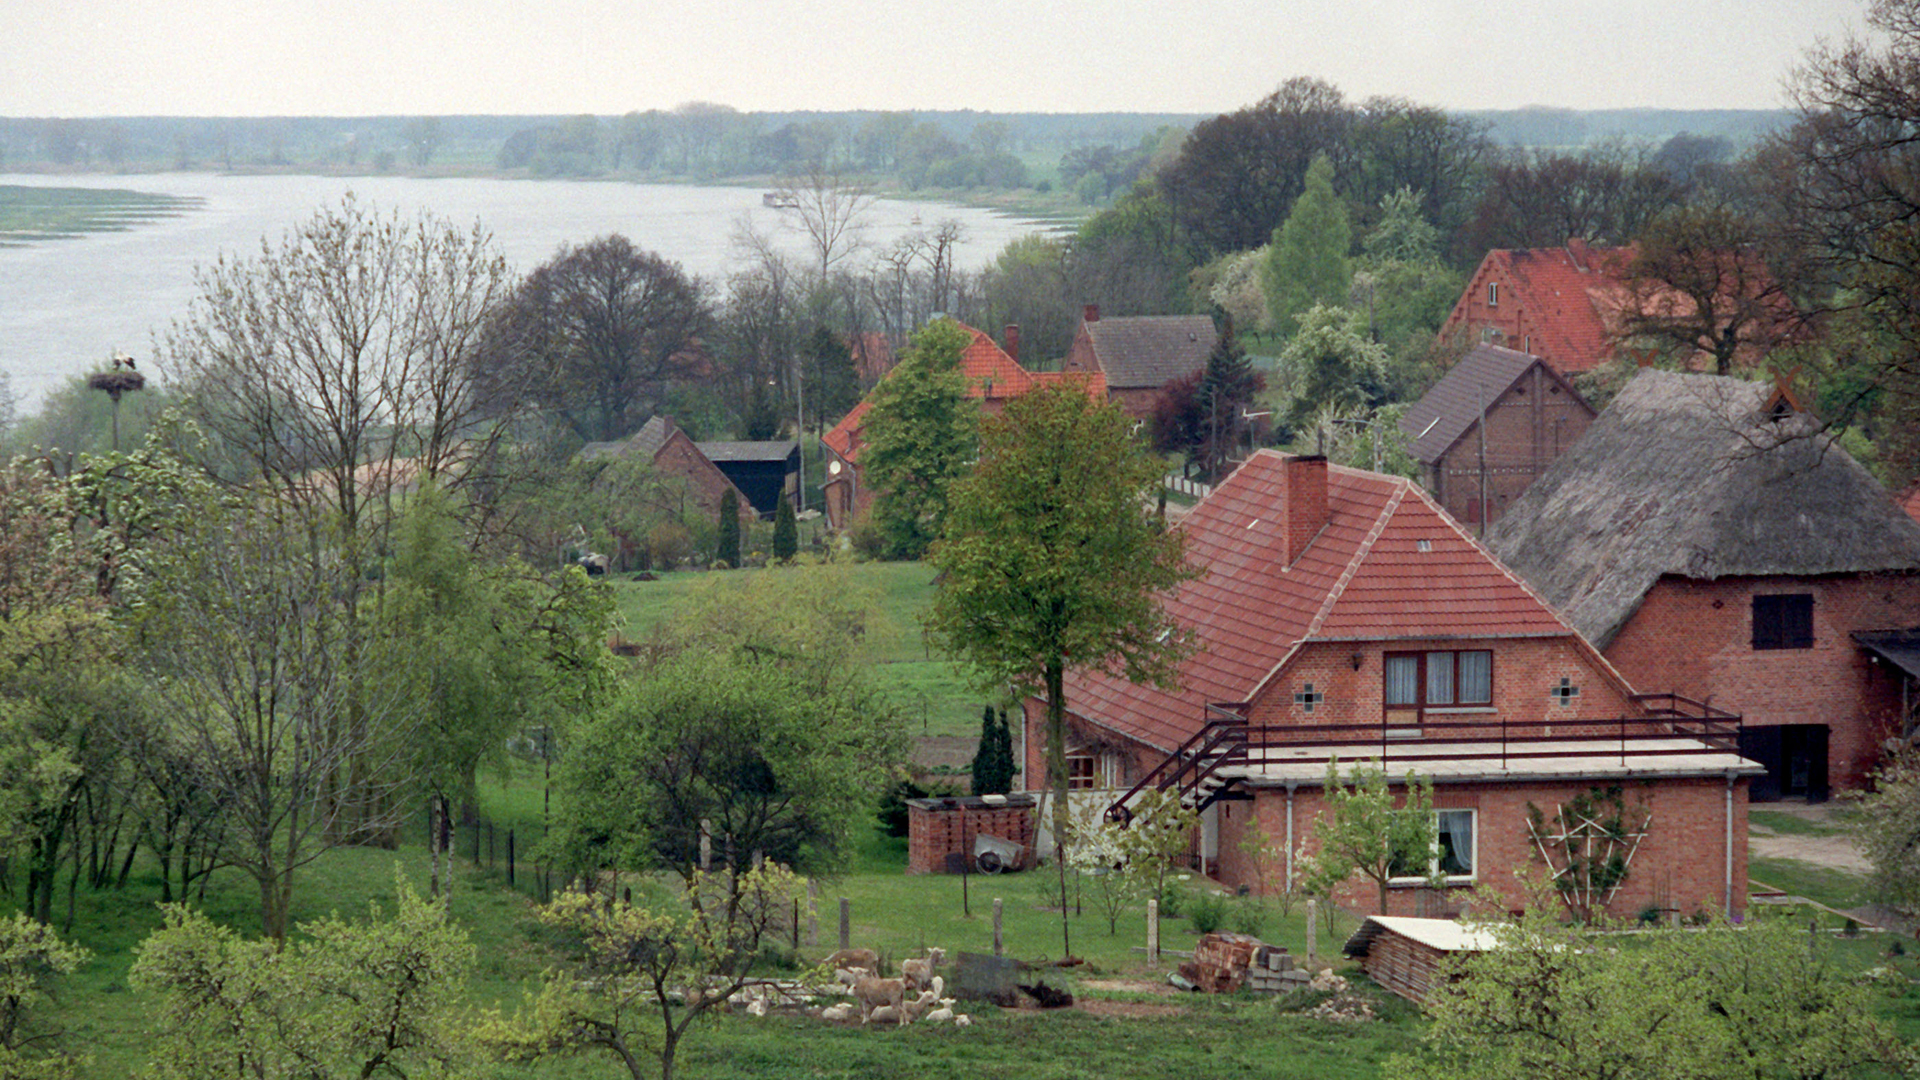 Eine Handvoll Häuser in unmittelbarer Nähe zur Elbe bilden das Dorf Rüterberg. Sie fügen sich harmonisch ein in eine grüne Flusslandschaft.